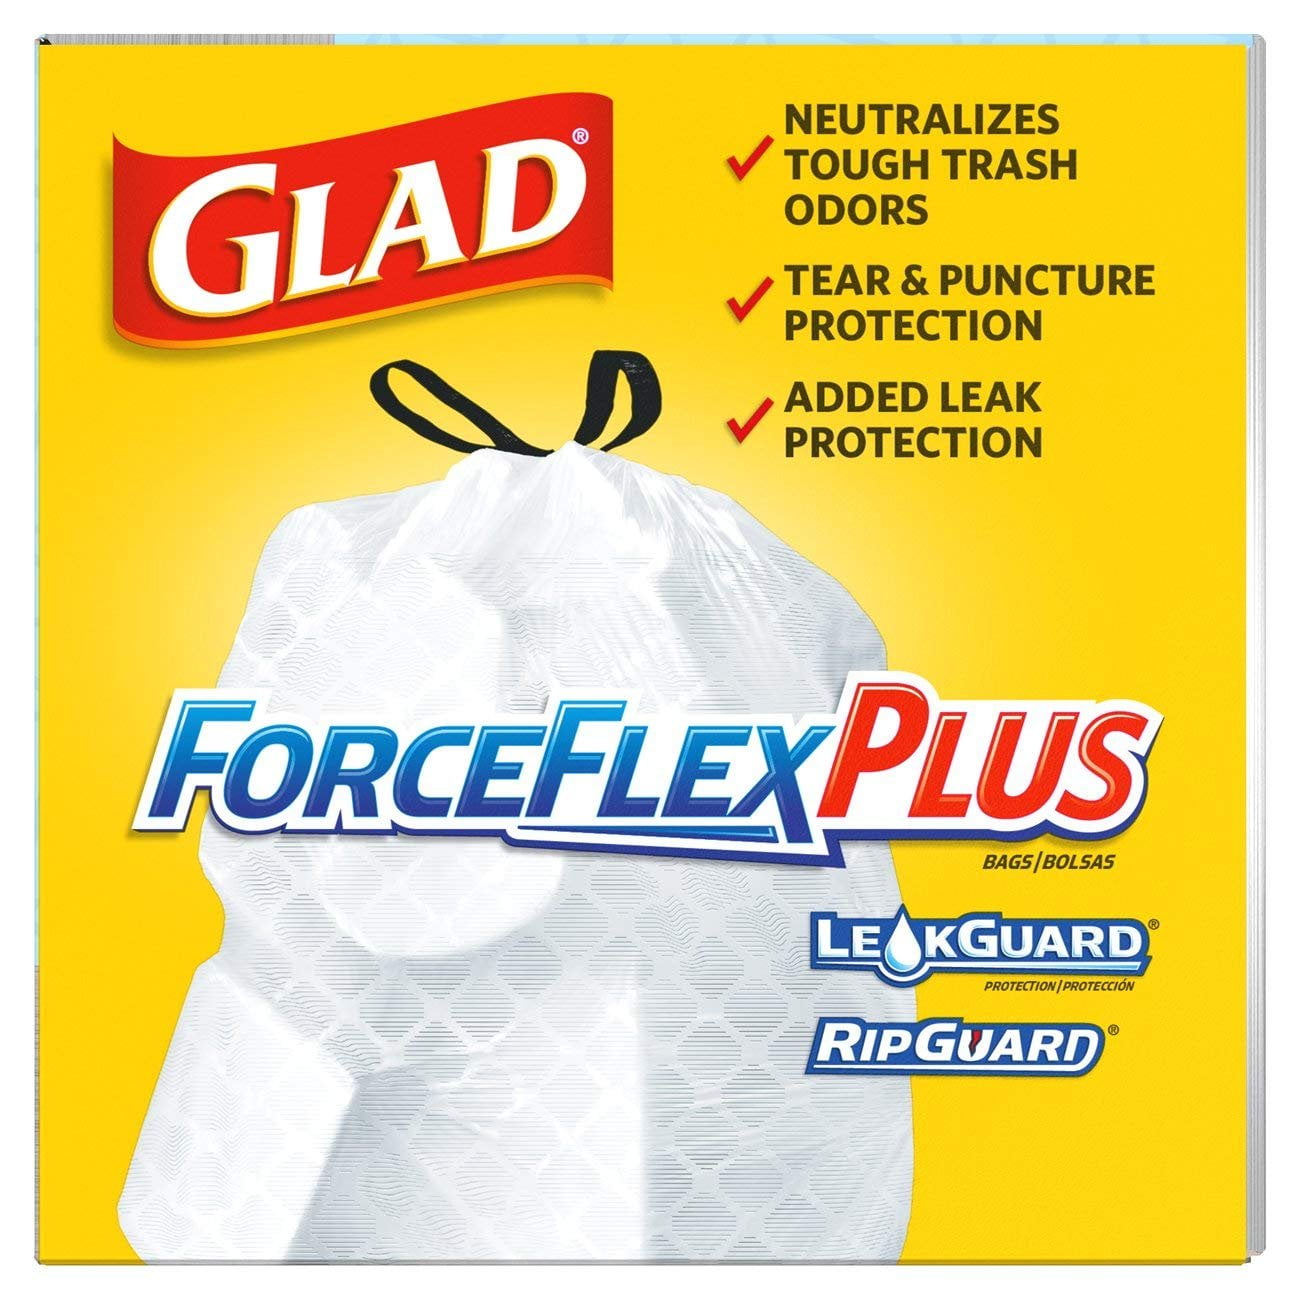 Glad ForceFlex Plus 13 Gal. Tall Kitchen White Trash Bag (40-Count) - Clark  Devon Hardware